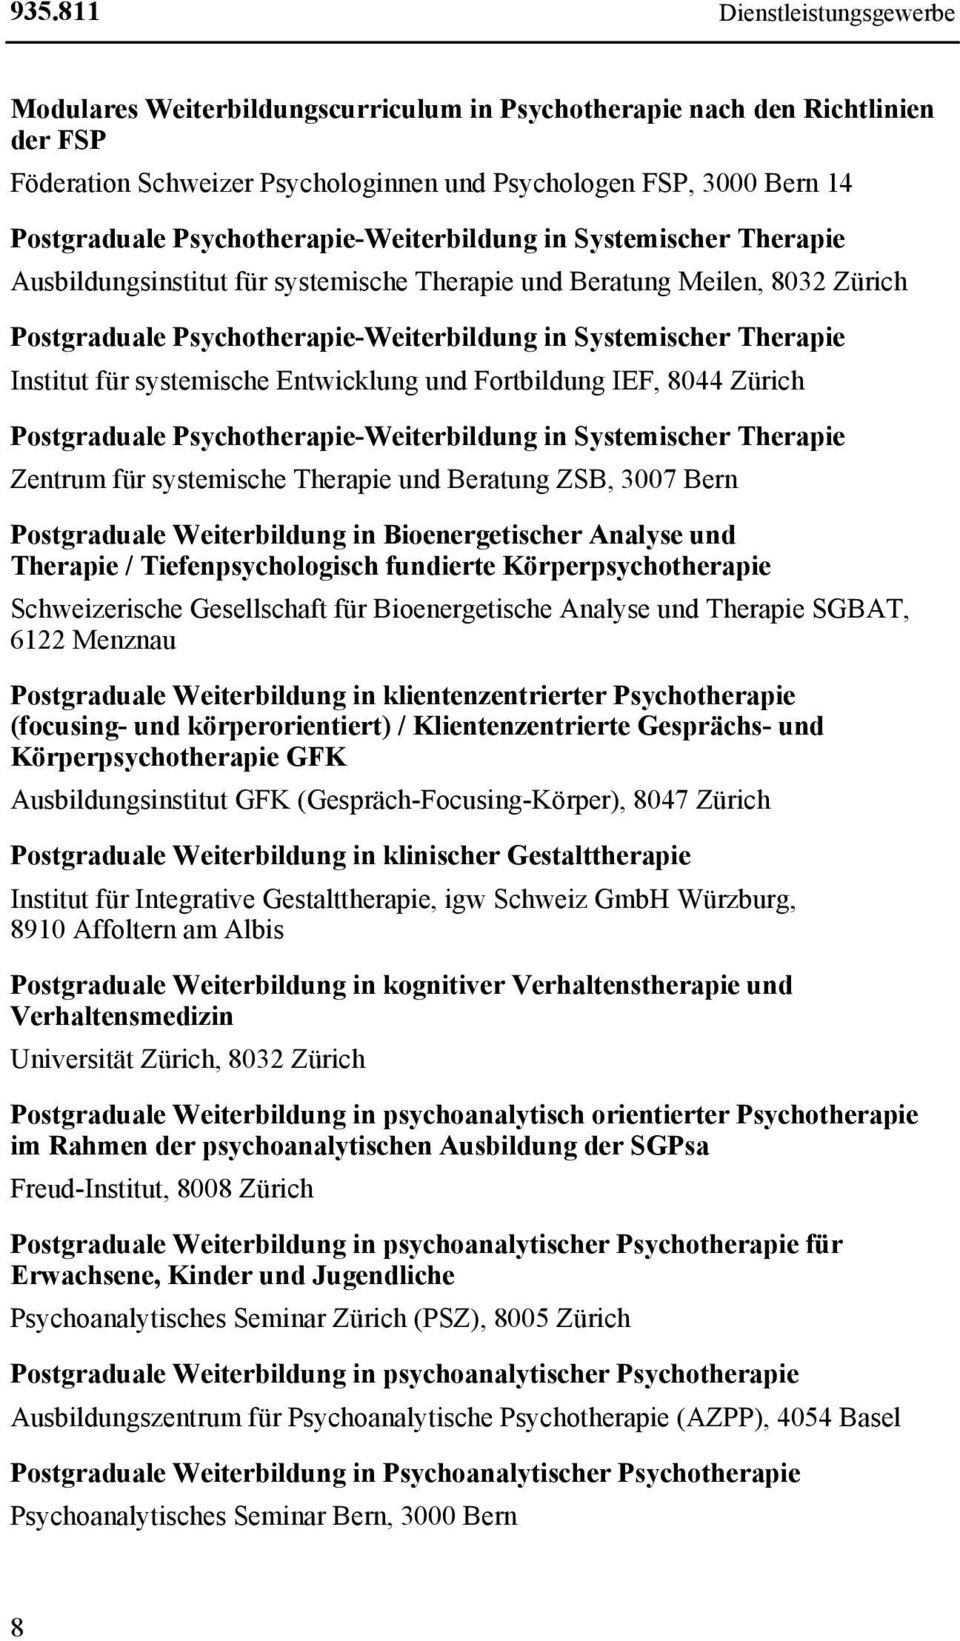 Institut für systemische Entwicklung und Fortbildung IEF, 8044 Zürich Postgraduale Psychotherapie-Weiterbildung in Systemischer Therapie Zentrum für systemische Therapie und Beratung ZSB, 3007 Bern